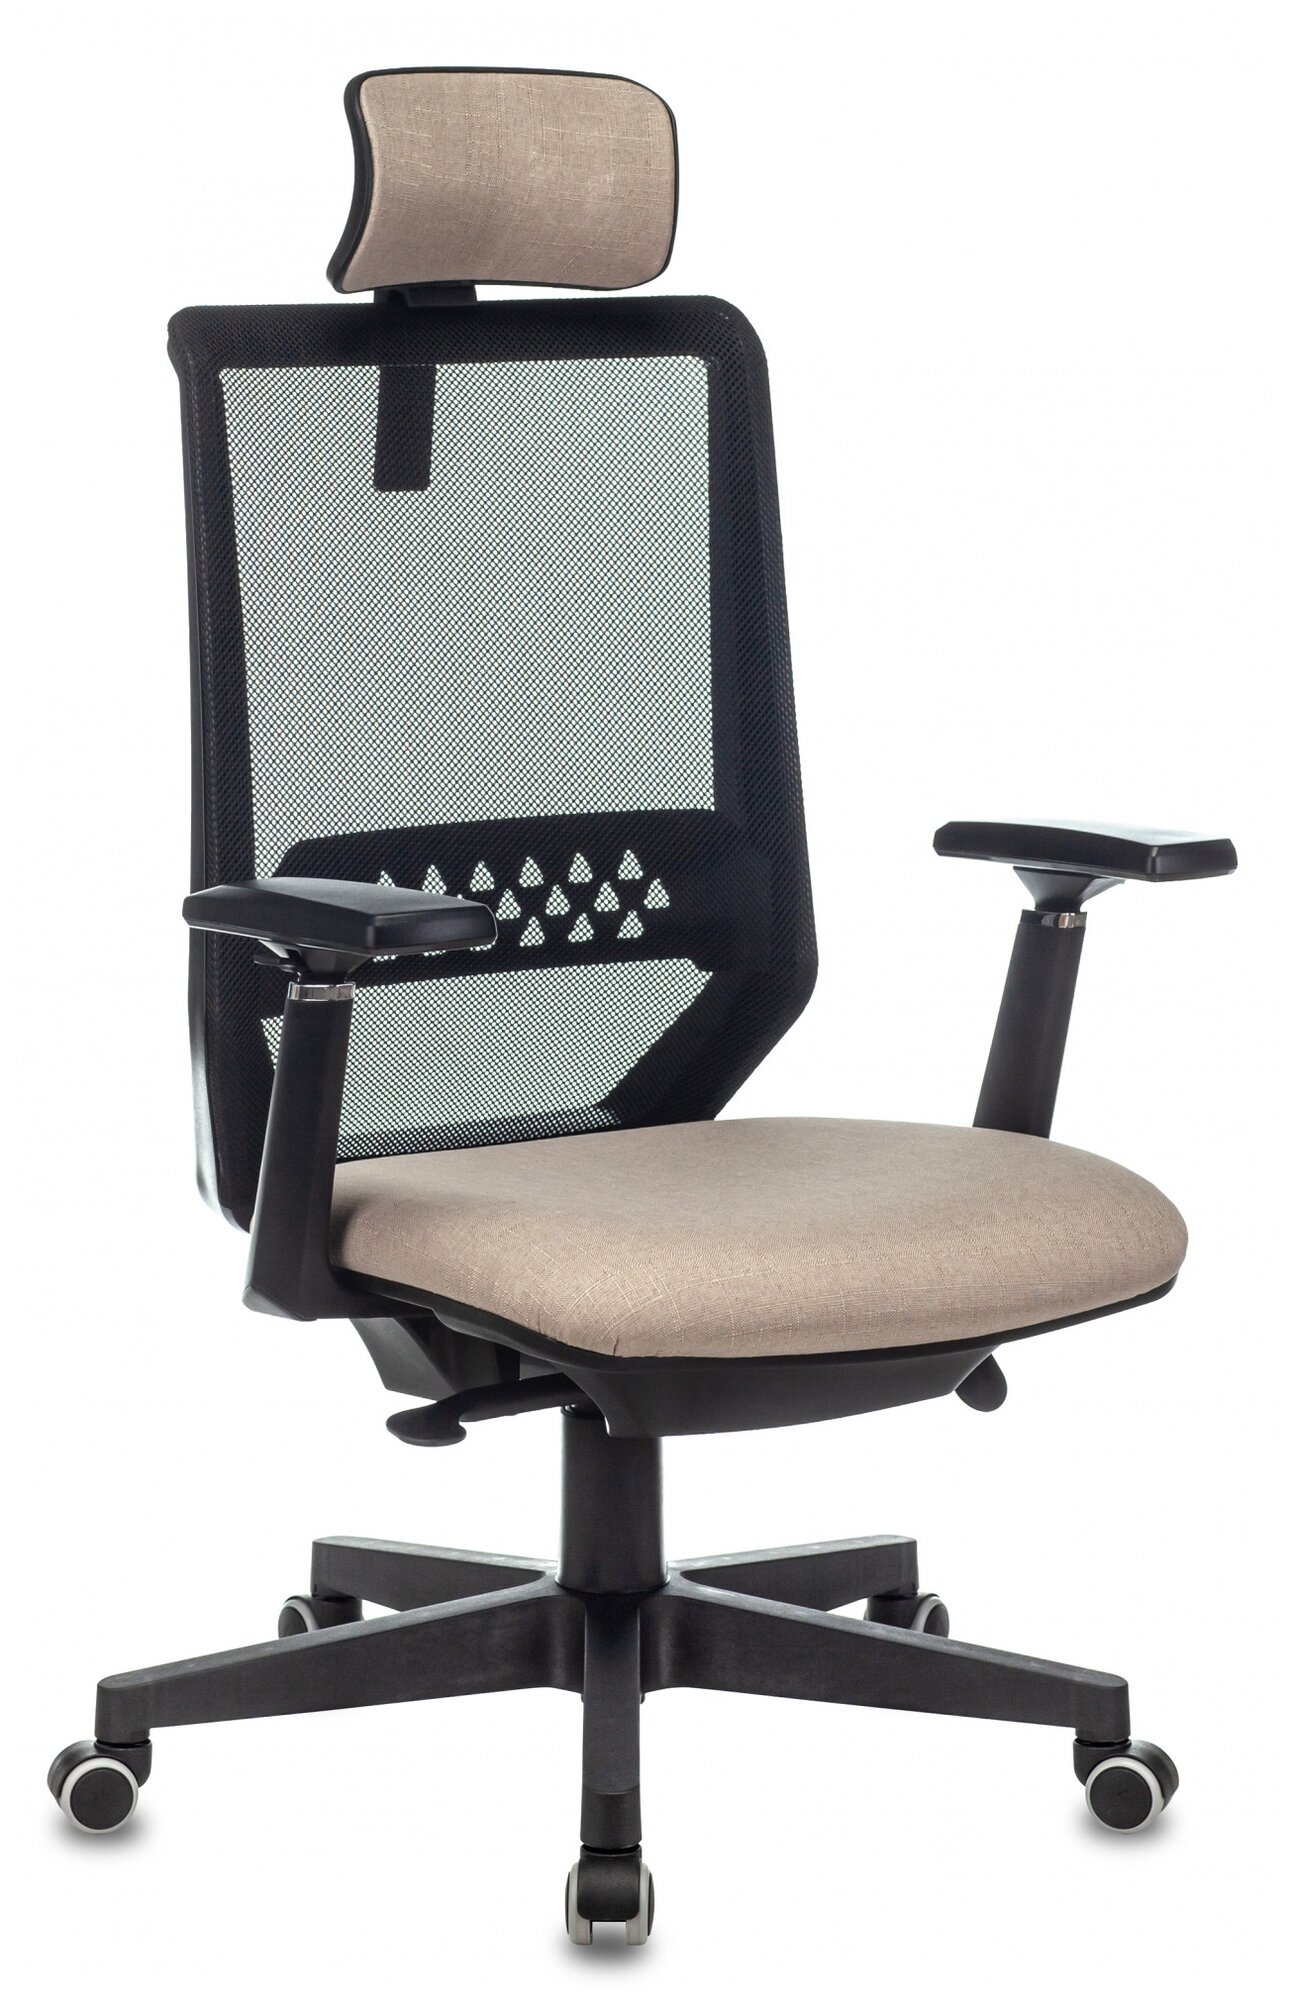 Компьютерное кресло Бюрократ EXPERT для руководителя, обивка: текстиль, цвет: черный/бежевый